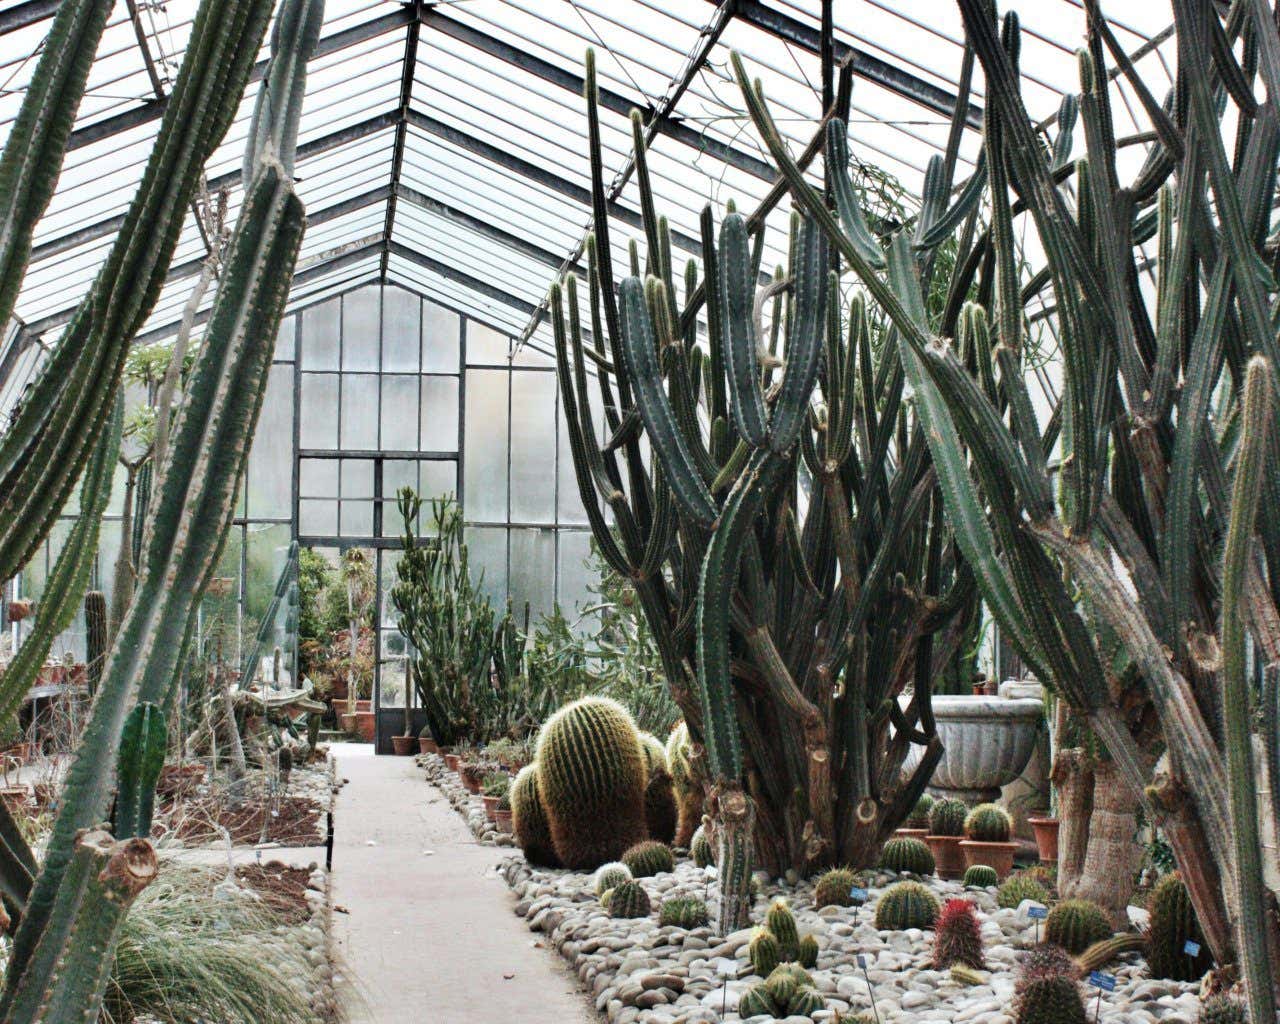 Una serra nell'orto Botanico di Palermo, in cui si trovano vari tipi di cactus, alcuni molto alti e altri più piccoli e rotondi.